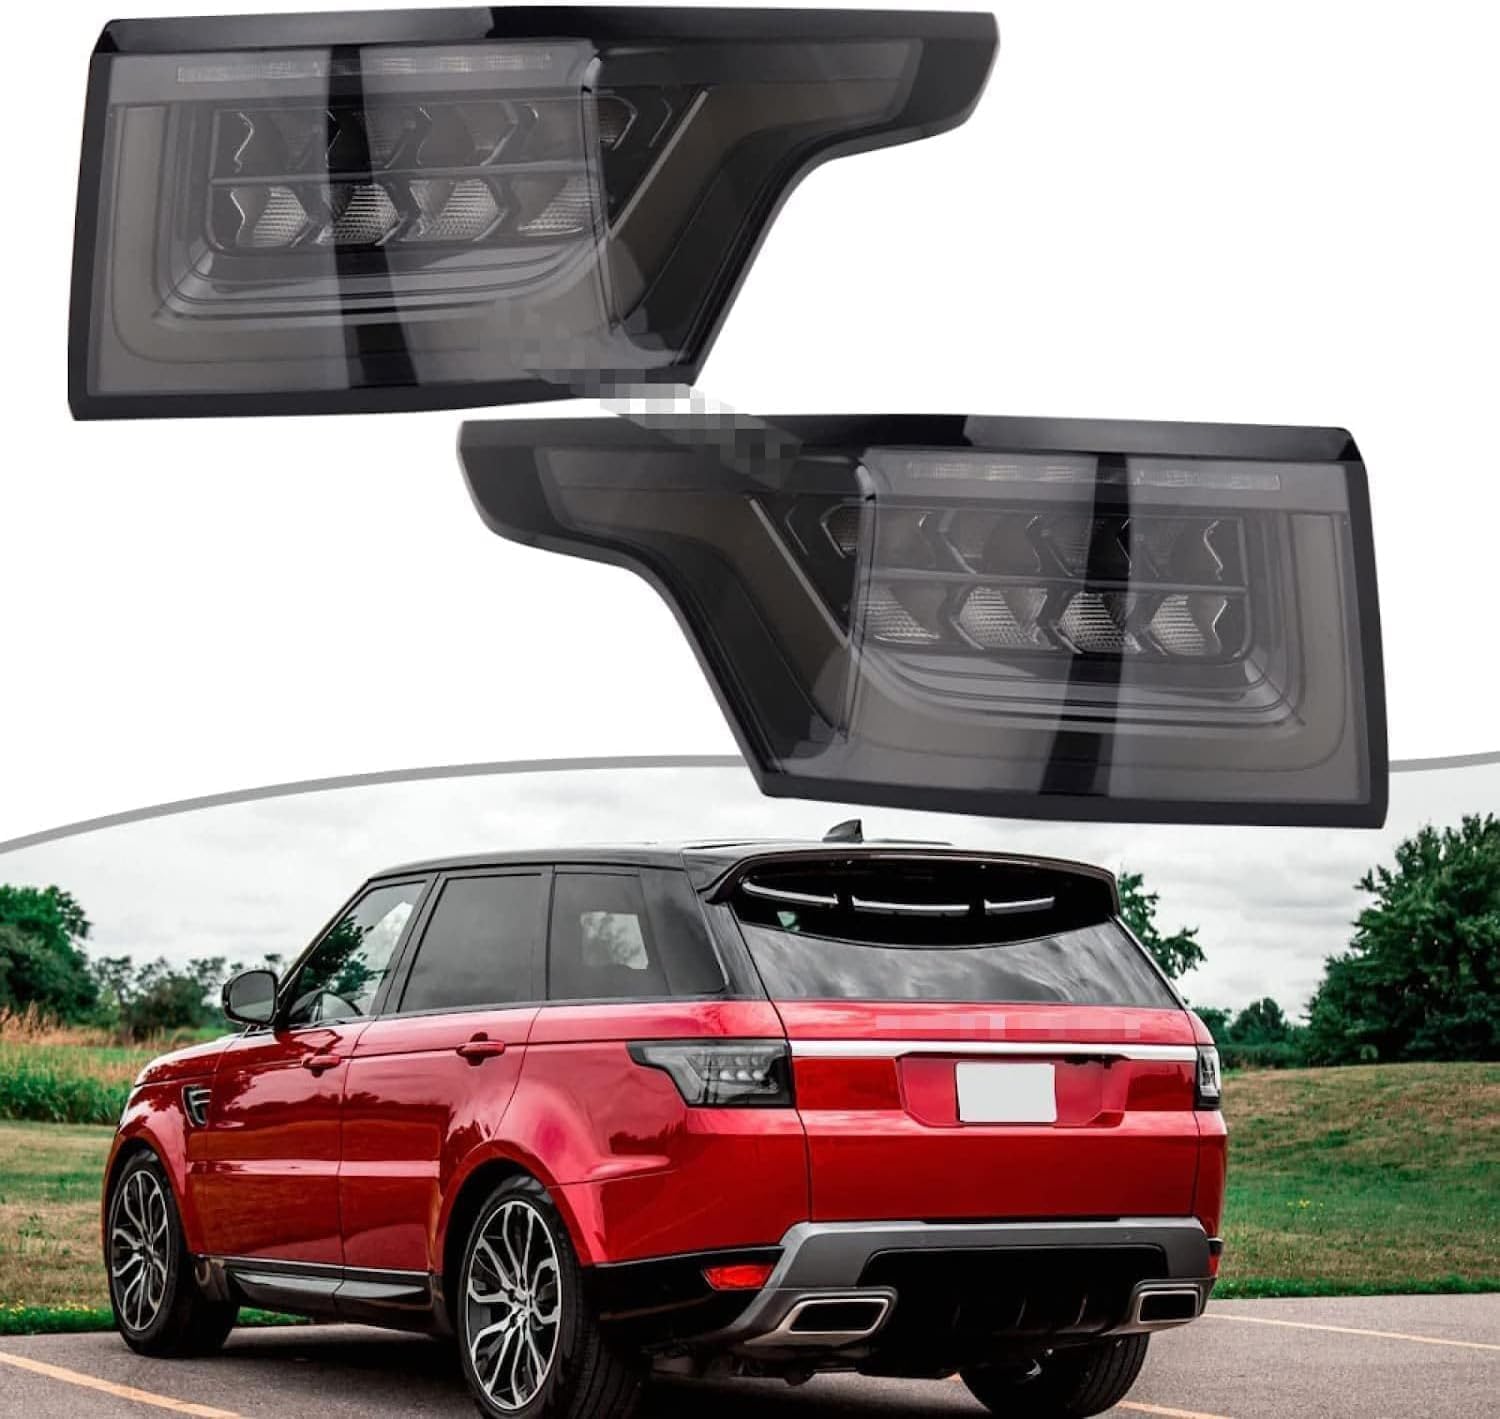 JXTTJ Auto LED Rückleuchten für Land Rover Range Rover Sport 2014-2020, Wasserdicht Multifunktion Rücklicht Kontrollleucht Ersetzt Zubehör,A-Left von JXTTJ